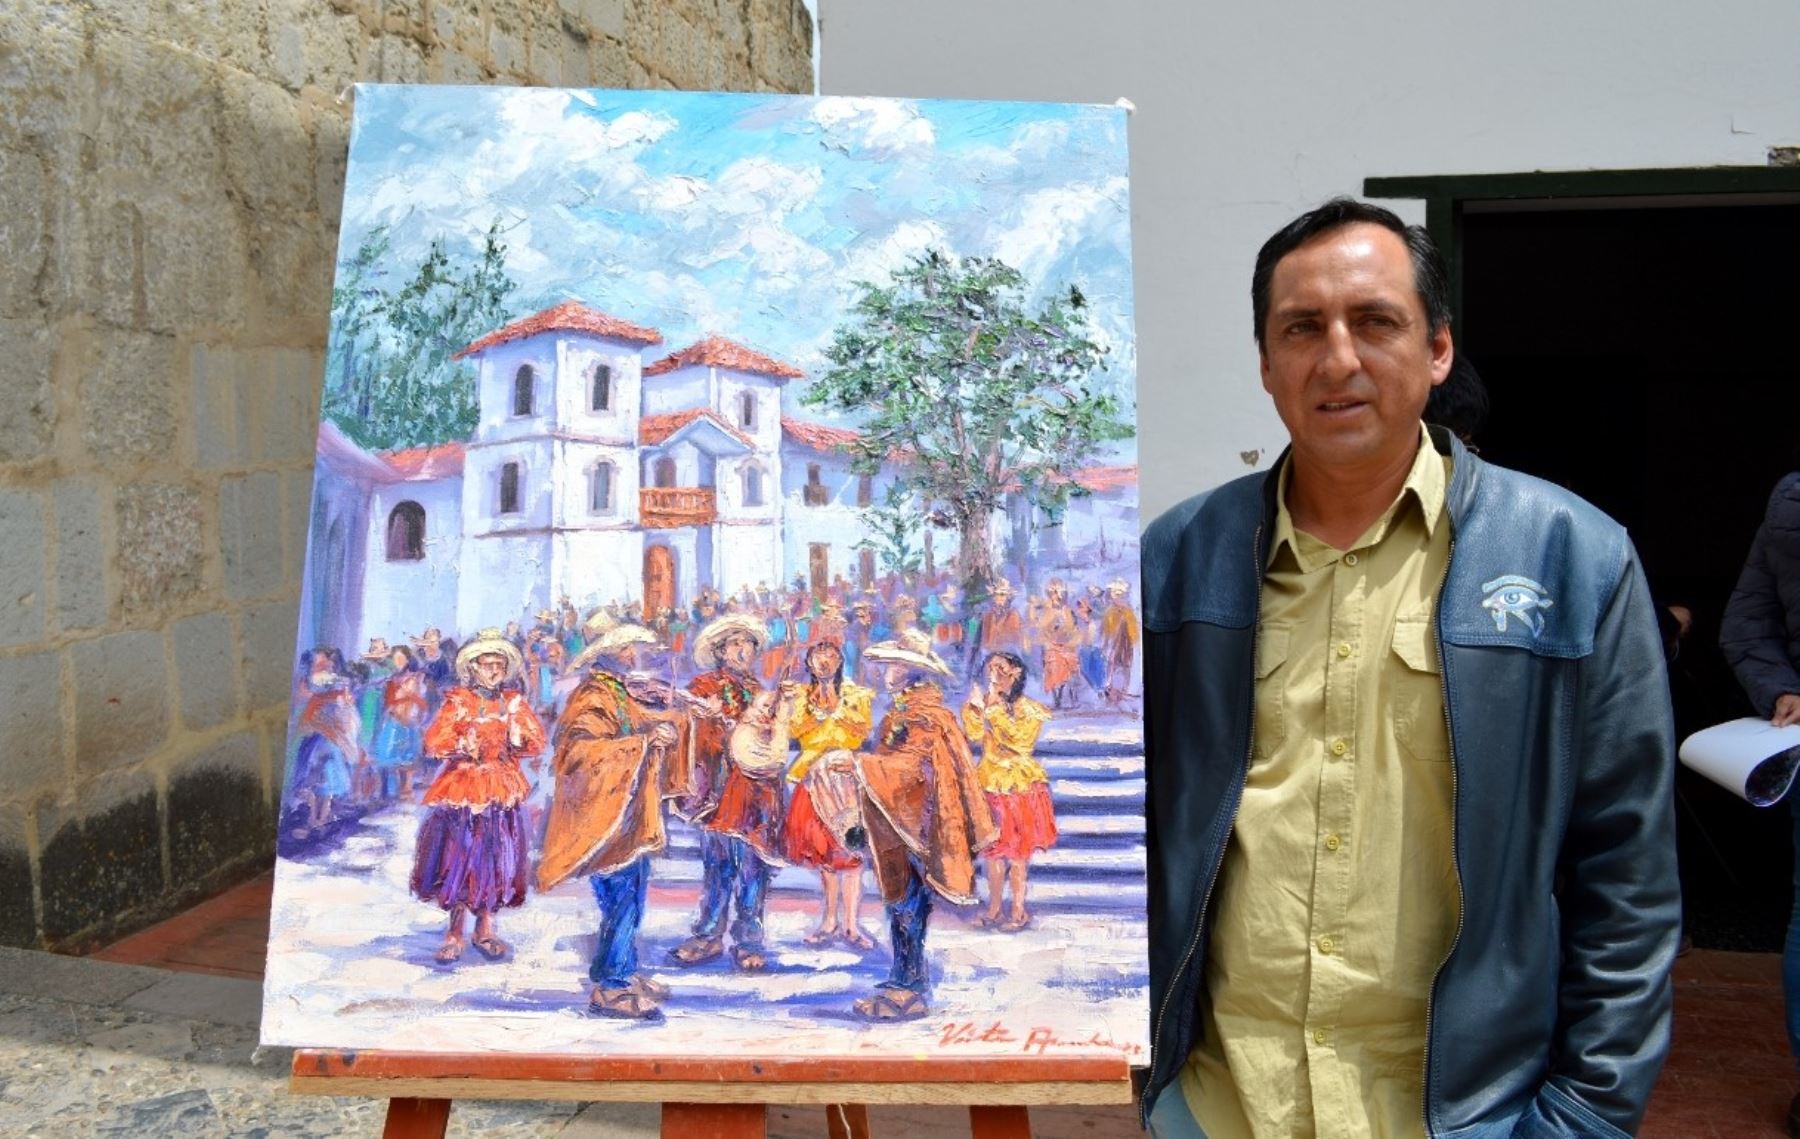 La Escuela del Carnaval muestra su arte inspirado en la tradicional fiesta popular que se celebra en Cajamarca. ANDINA/Difusión